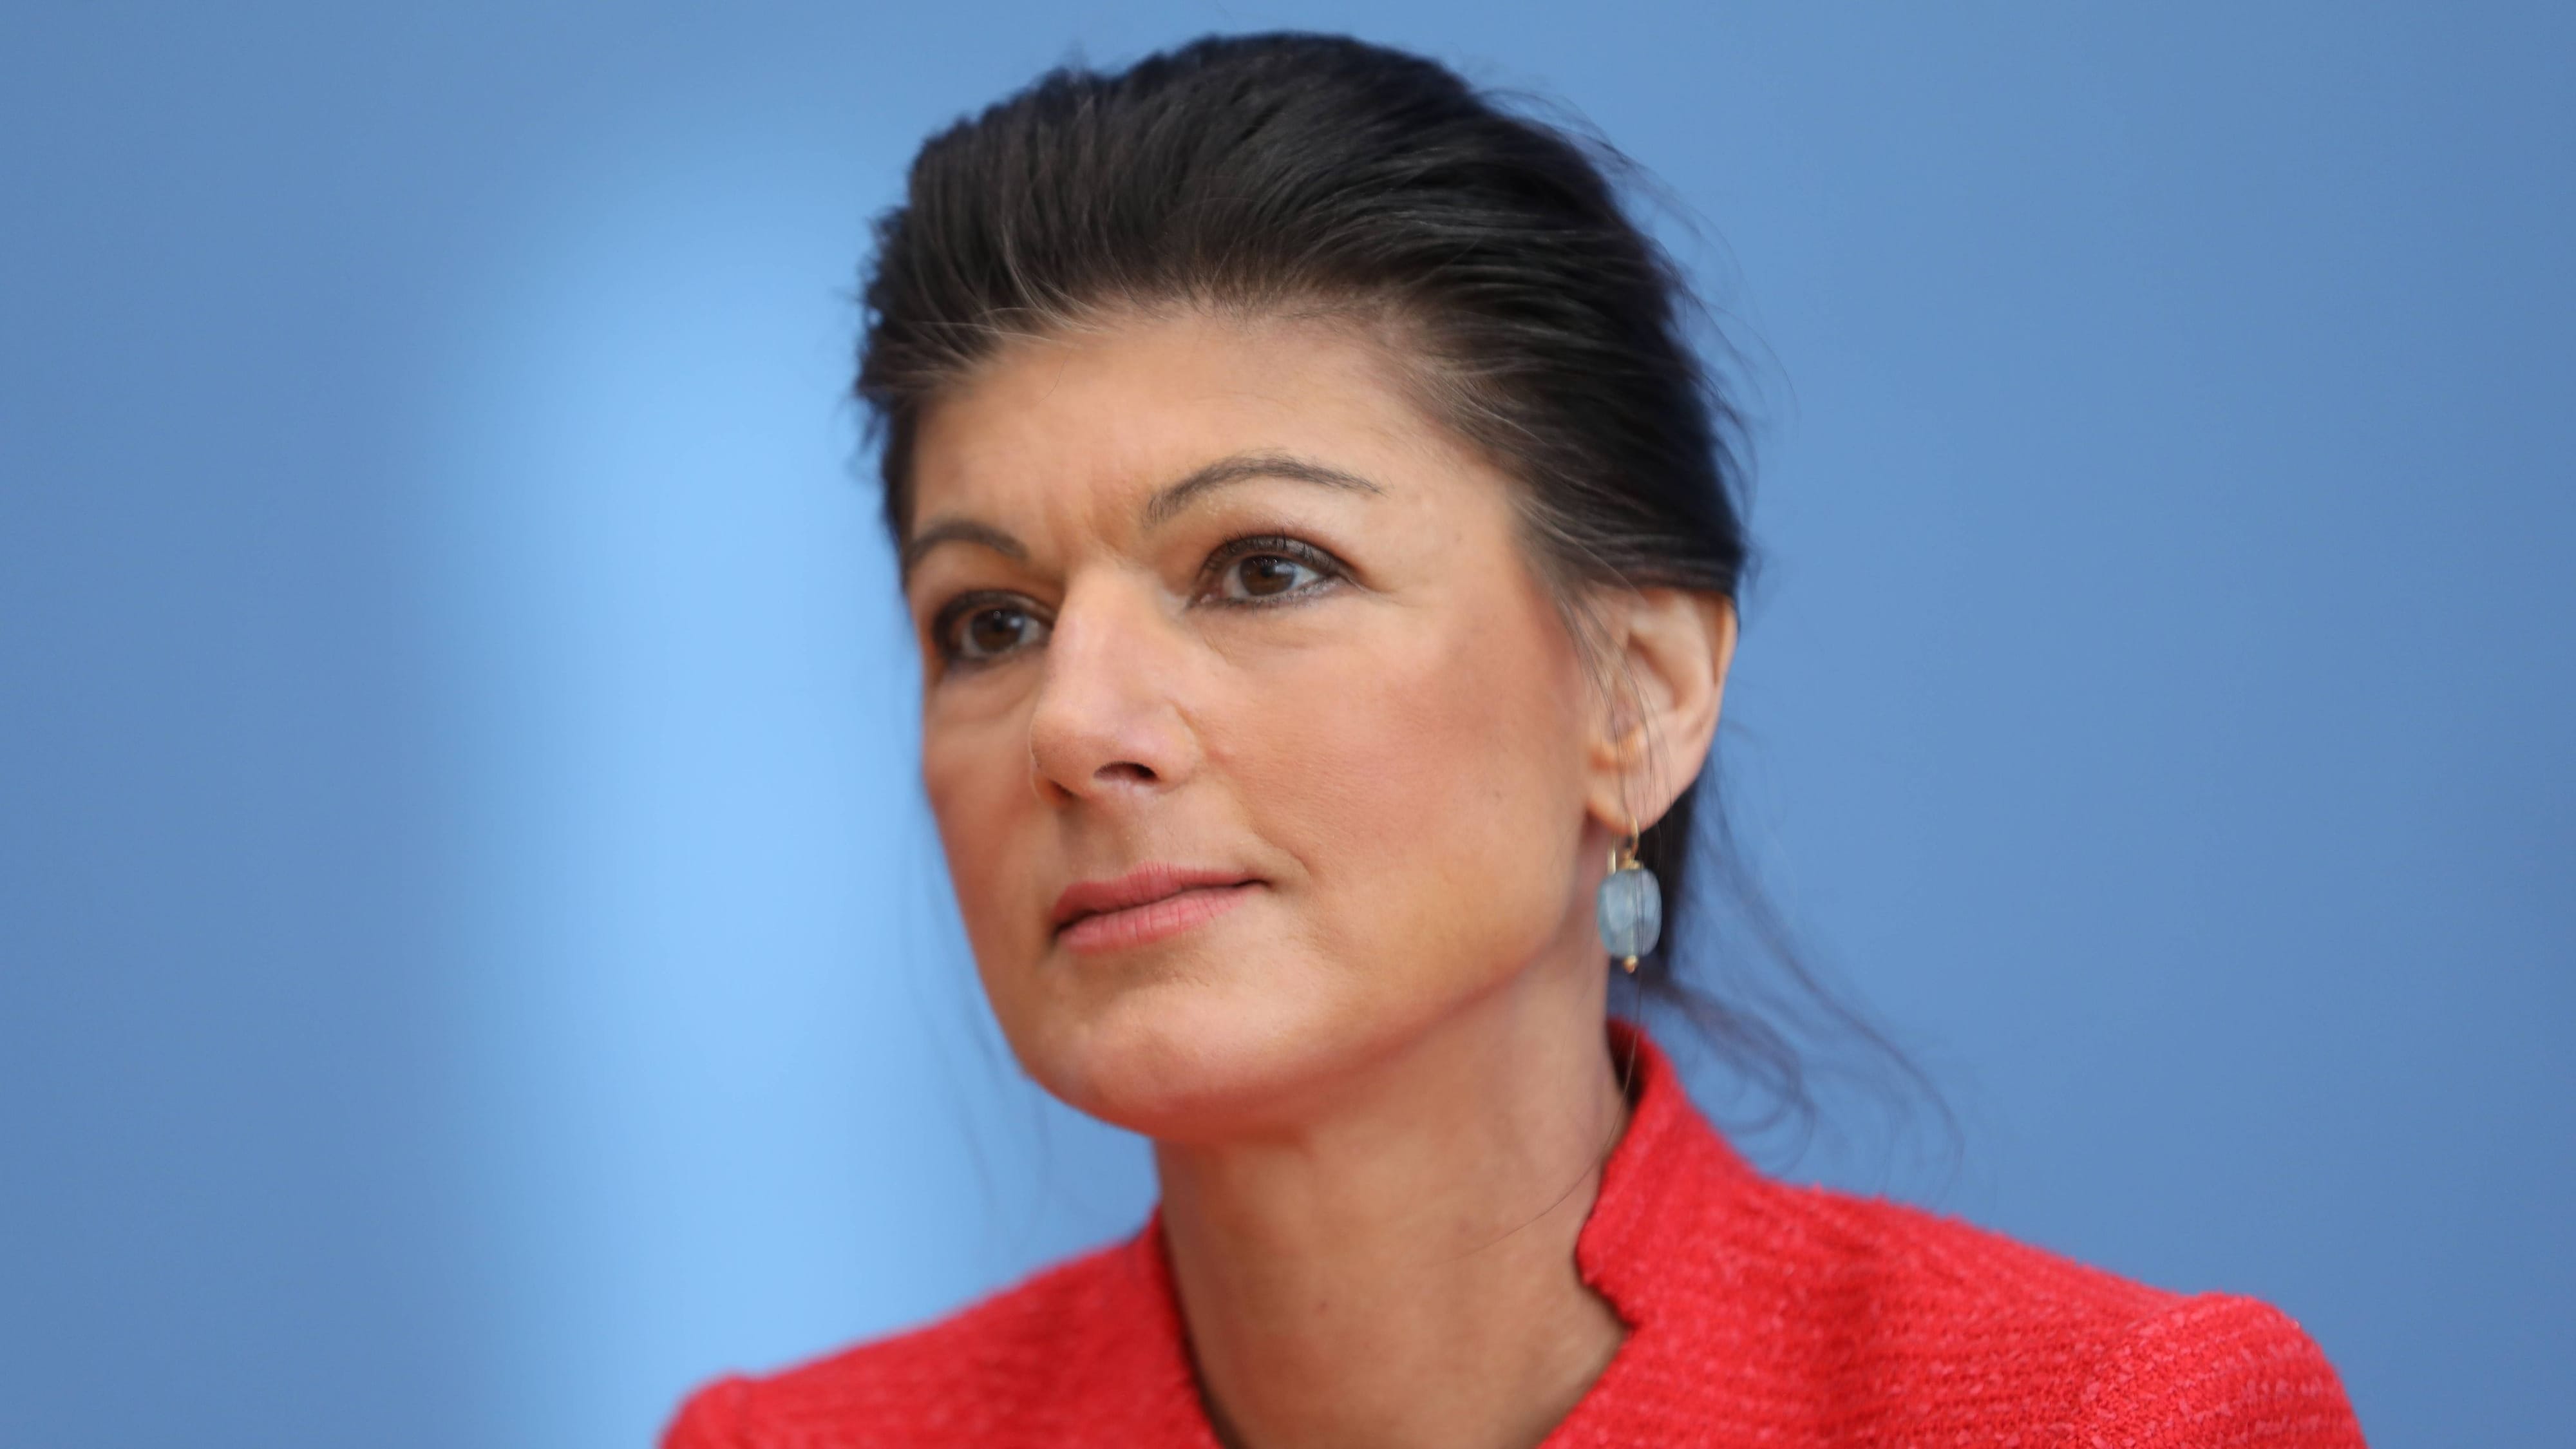 Bündnis Sahra Wagenknecht stark, SPD verliert weiter | Umfrage